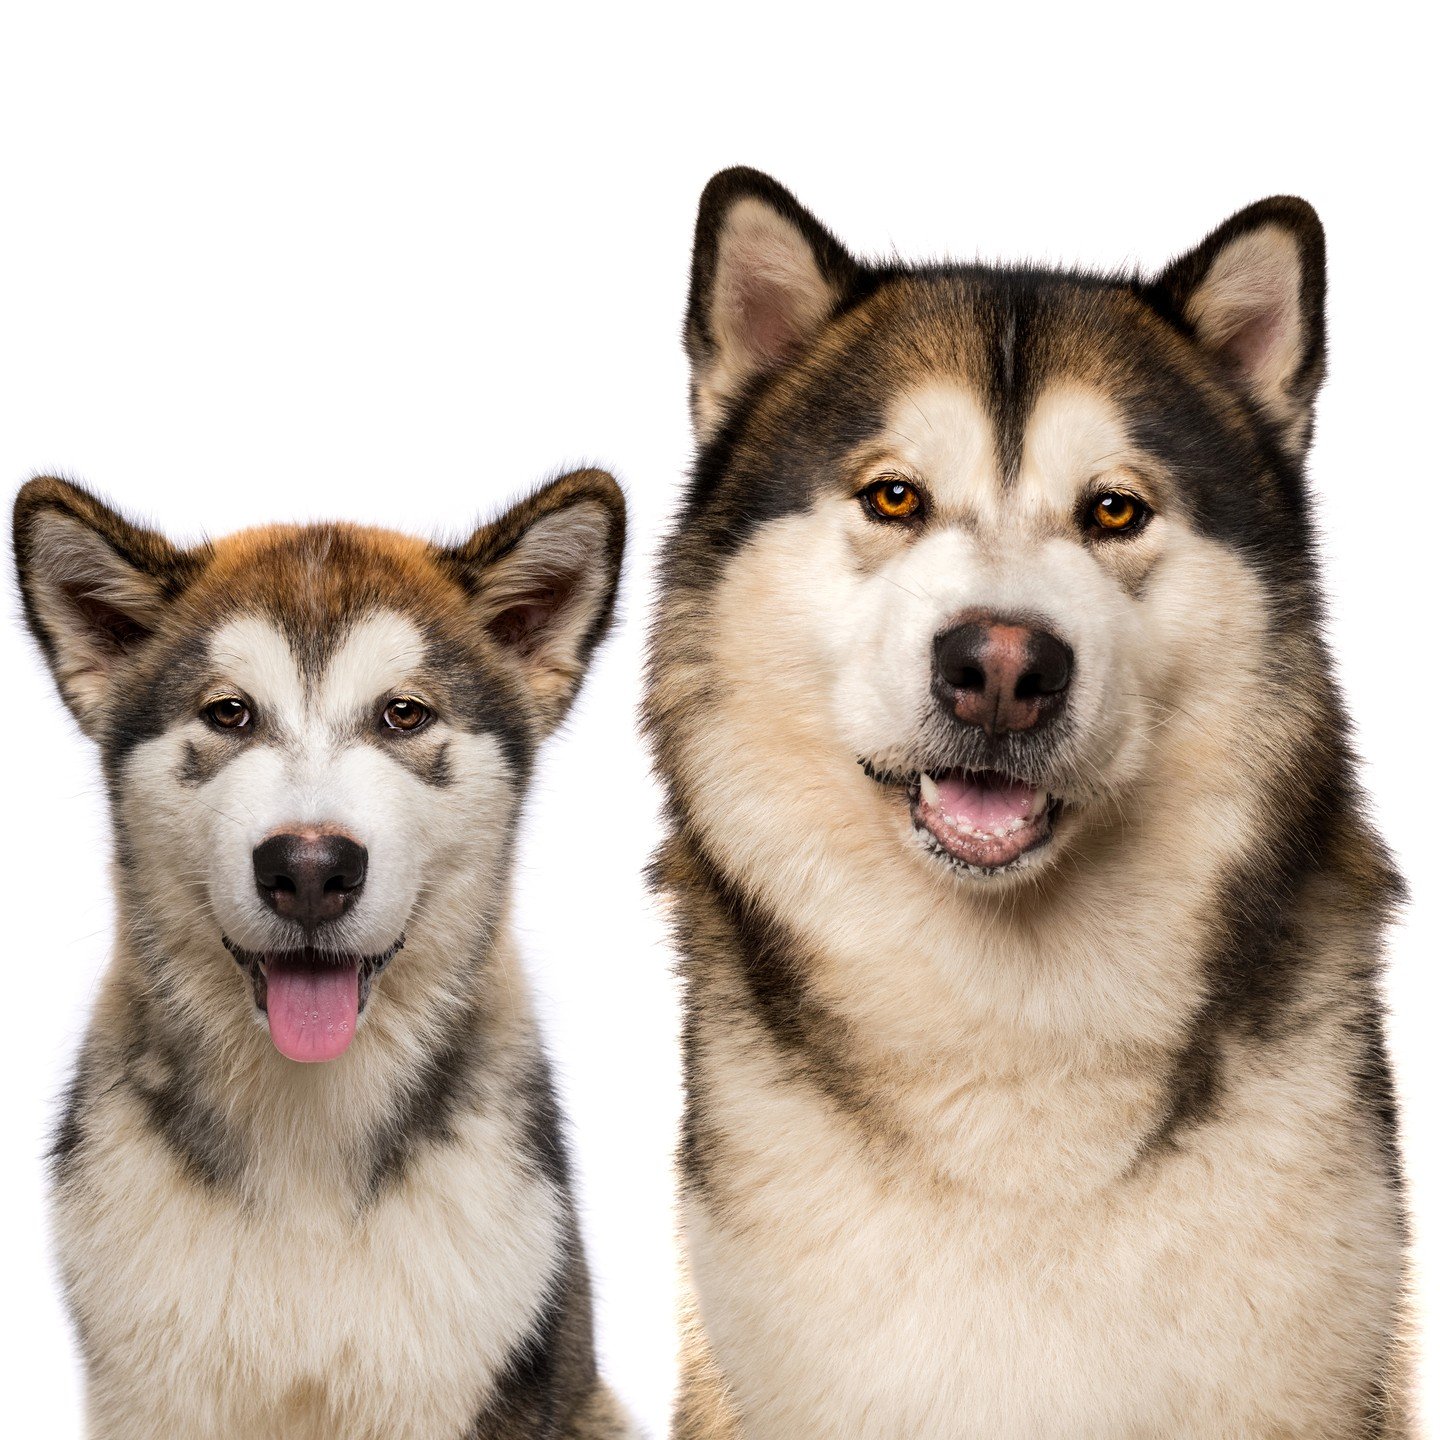 Koda then and Koda now 🐶💕
@mallylife19

#alaskanmalamute #malamute #alaskanmalamutepuppy #alaskanmalamutes #petphotography 
#puppy